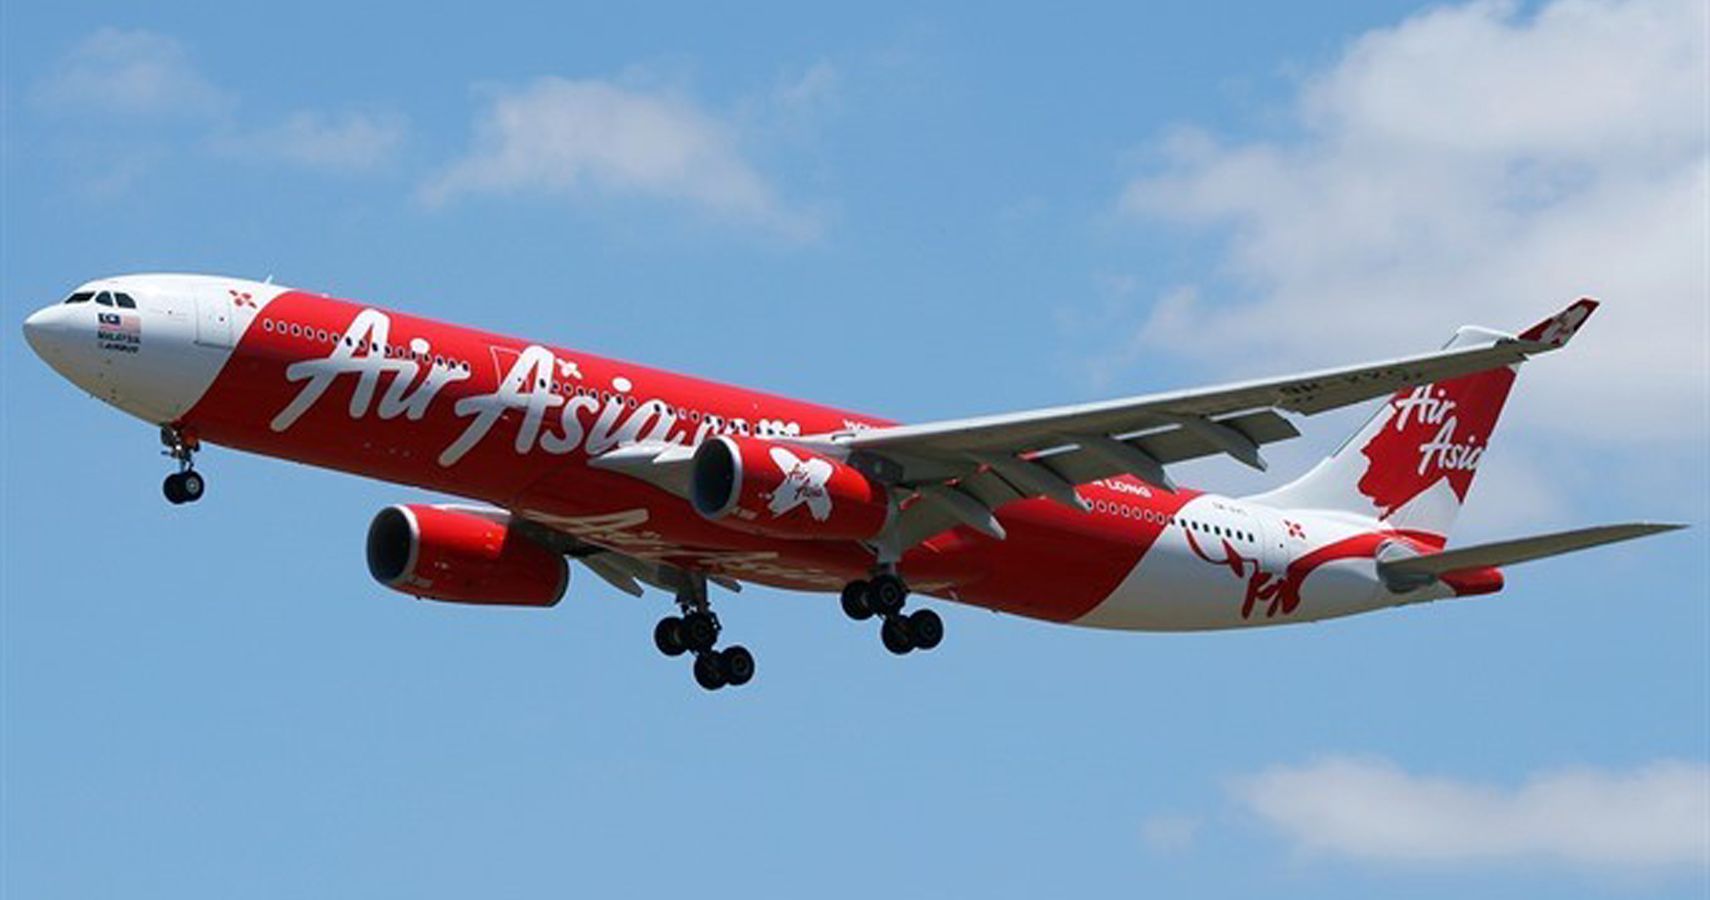 Premio AirAsia quotCompanhia aerea de baixo custo liderquot Titulo pelo